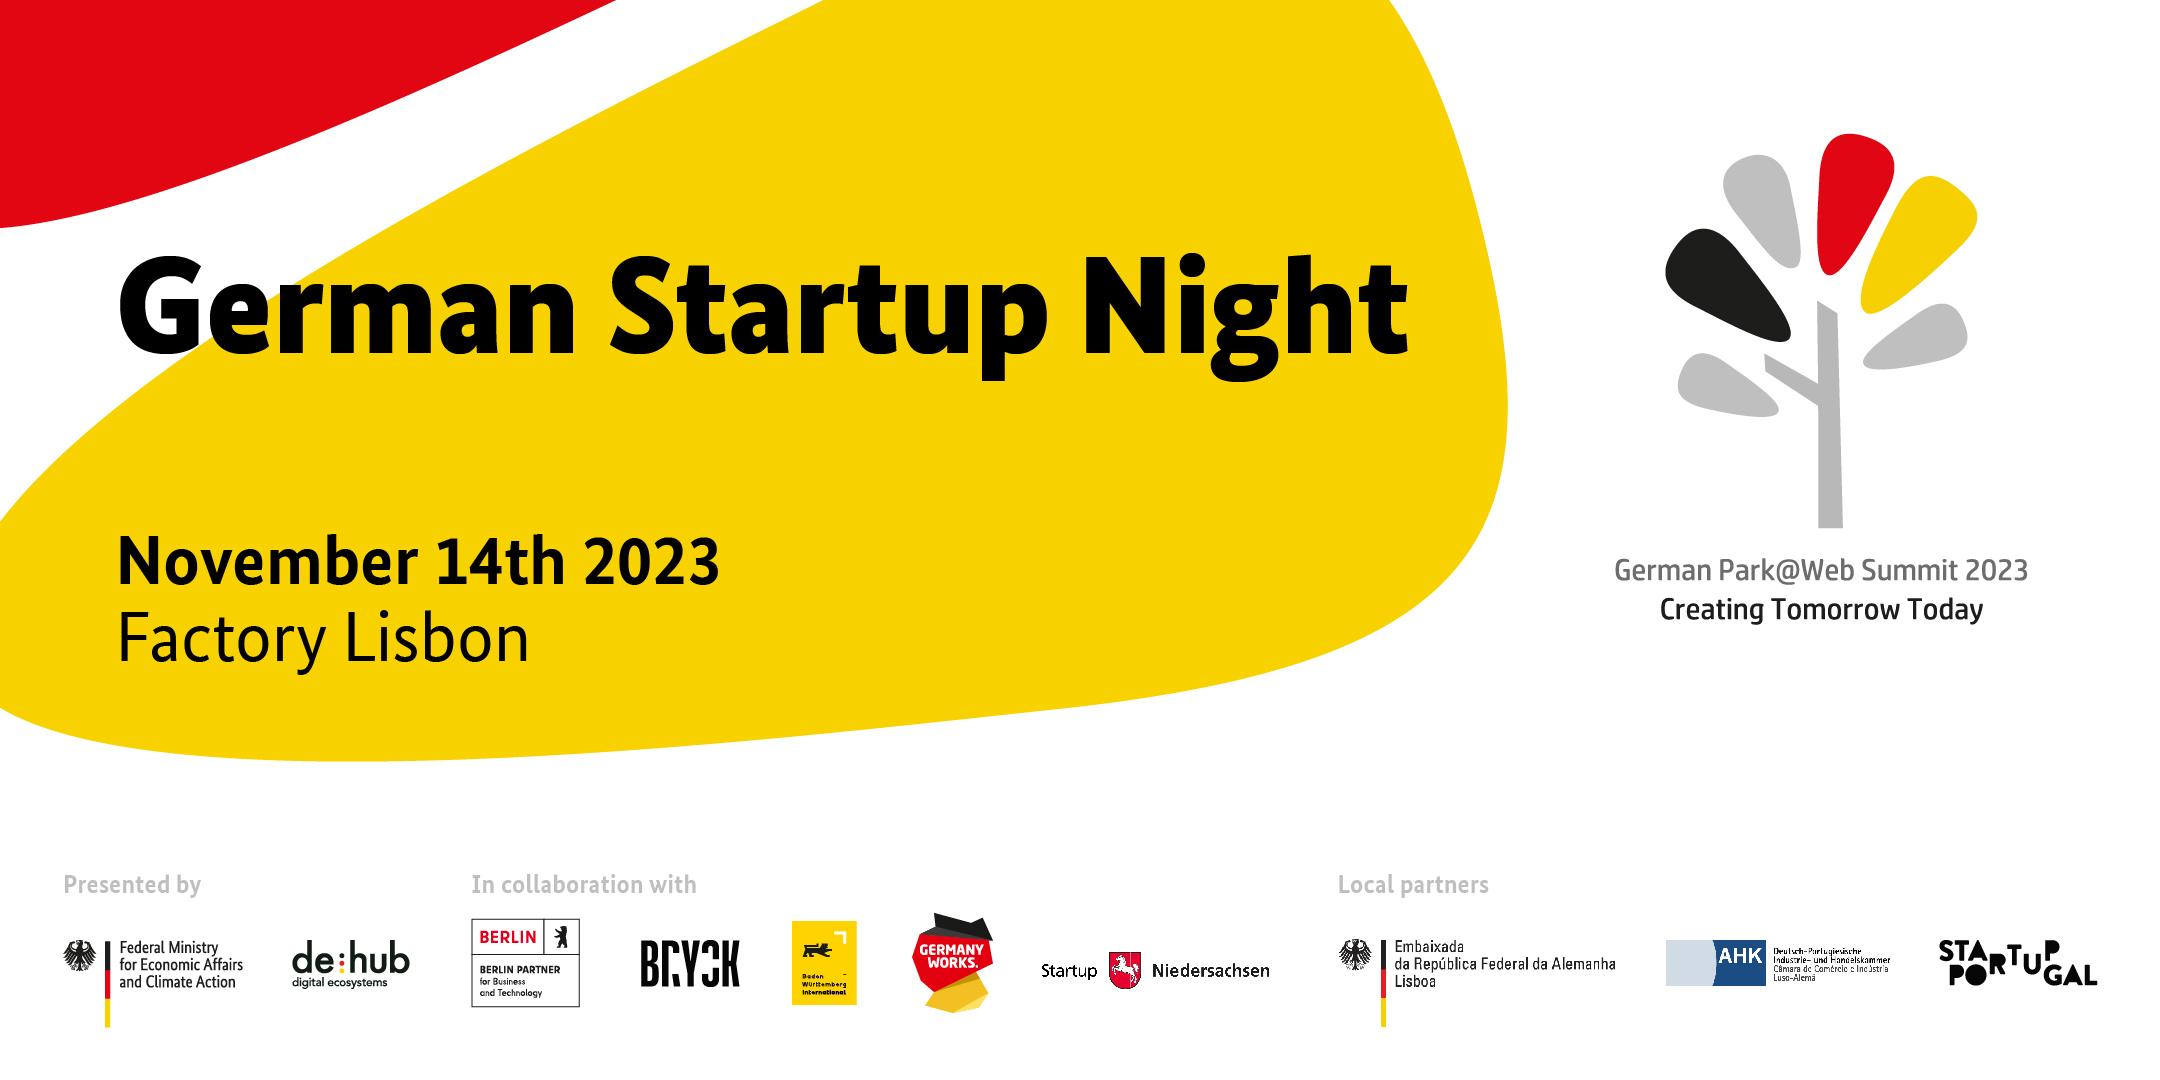 German Startup Night